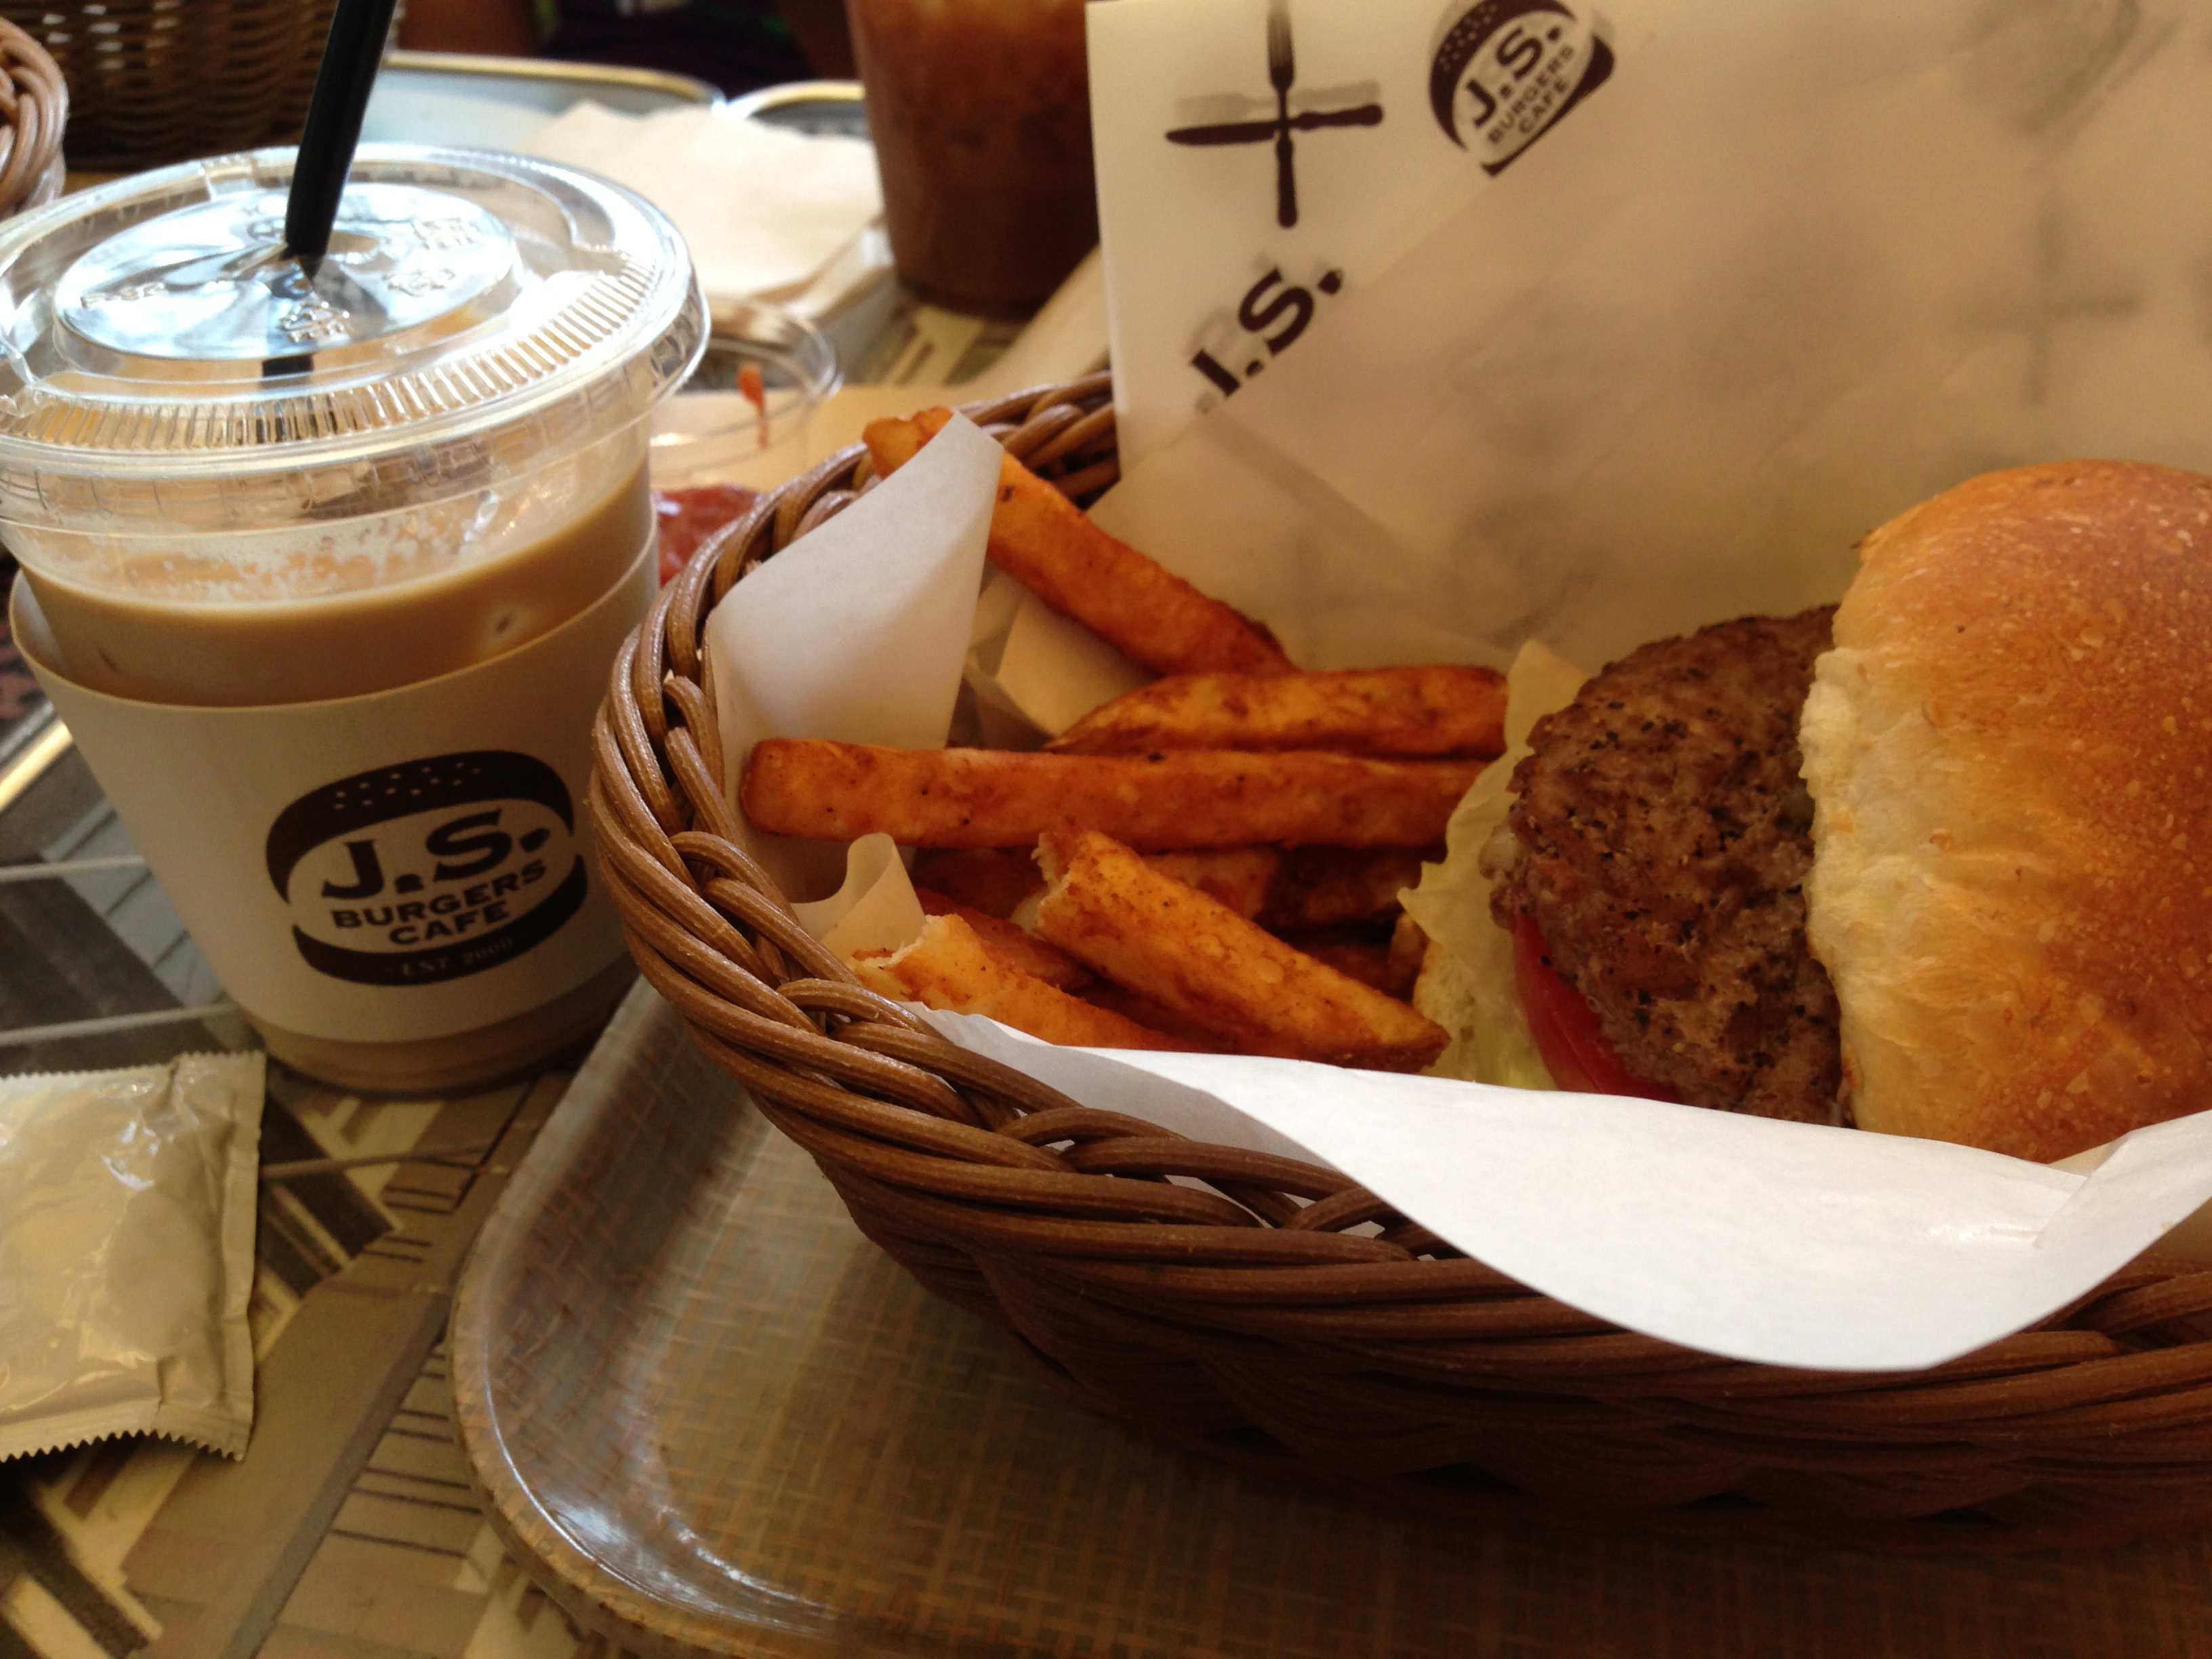 東京でハンバーガーといえばこれ! J.S.BURGERS CAFE